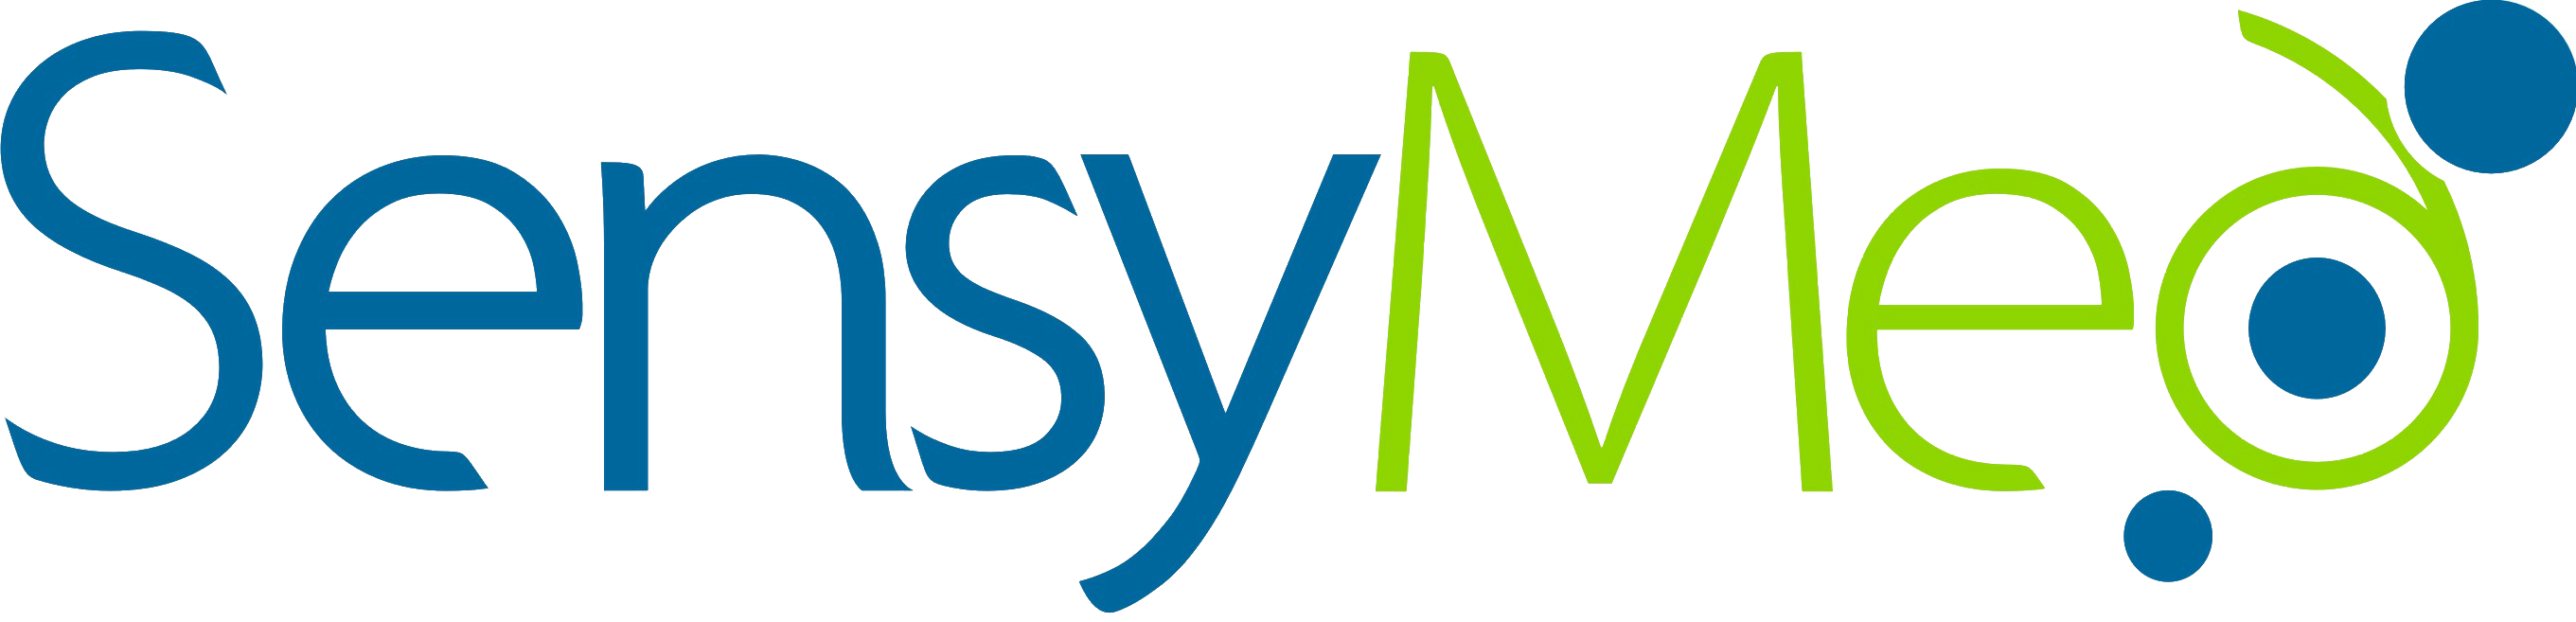 SM.Logotipo-Simplificado-Transparente-2